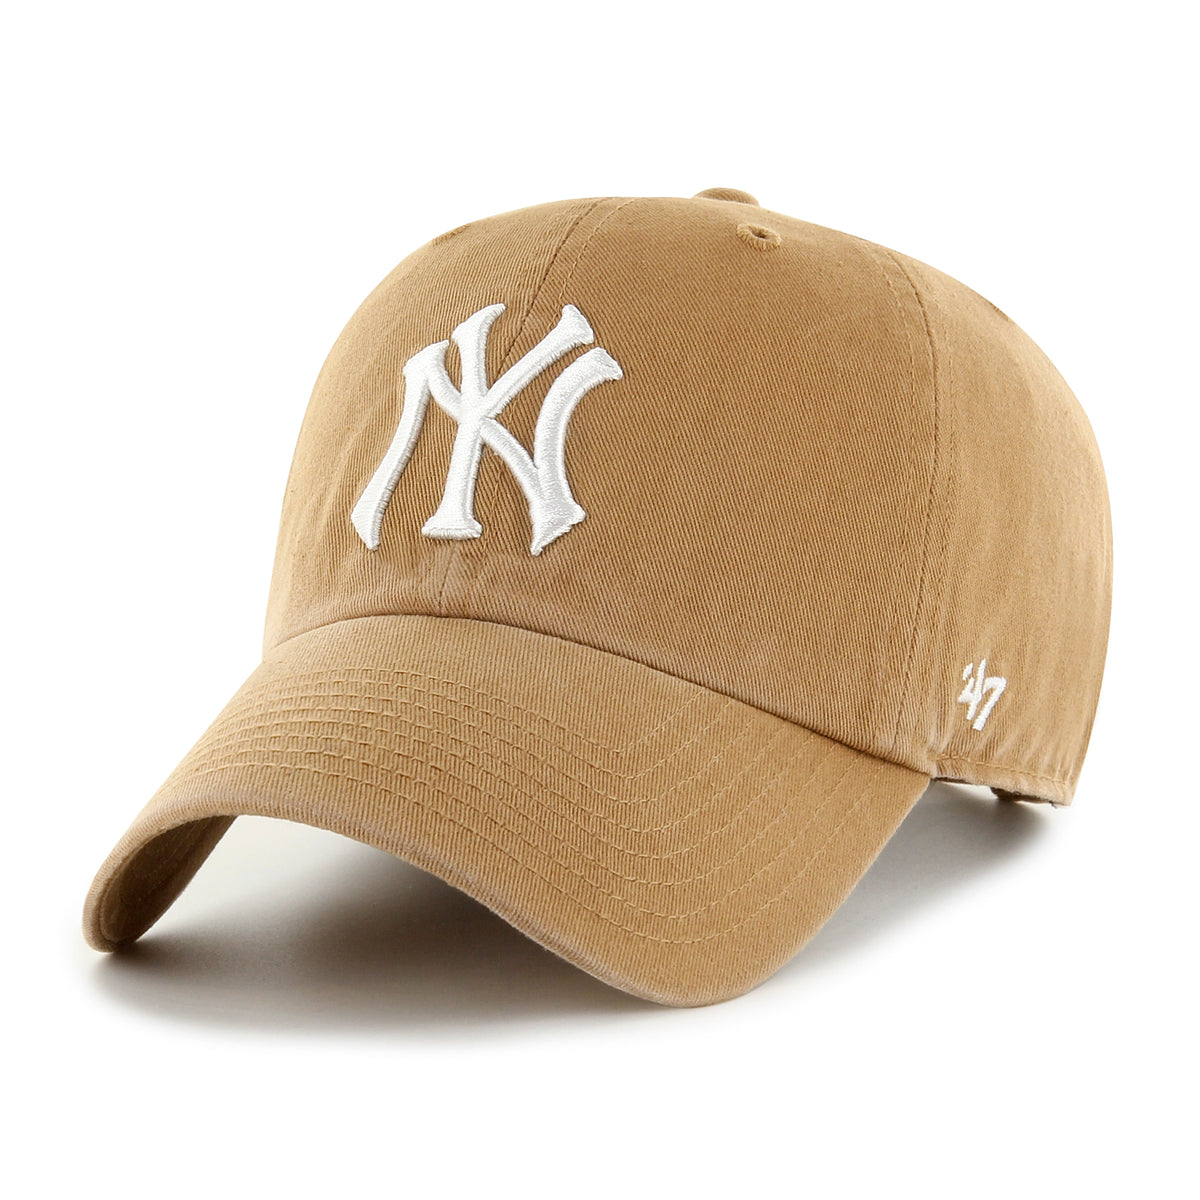 כובע – CLEAN UP 47 NY-47-One size-נאקו